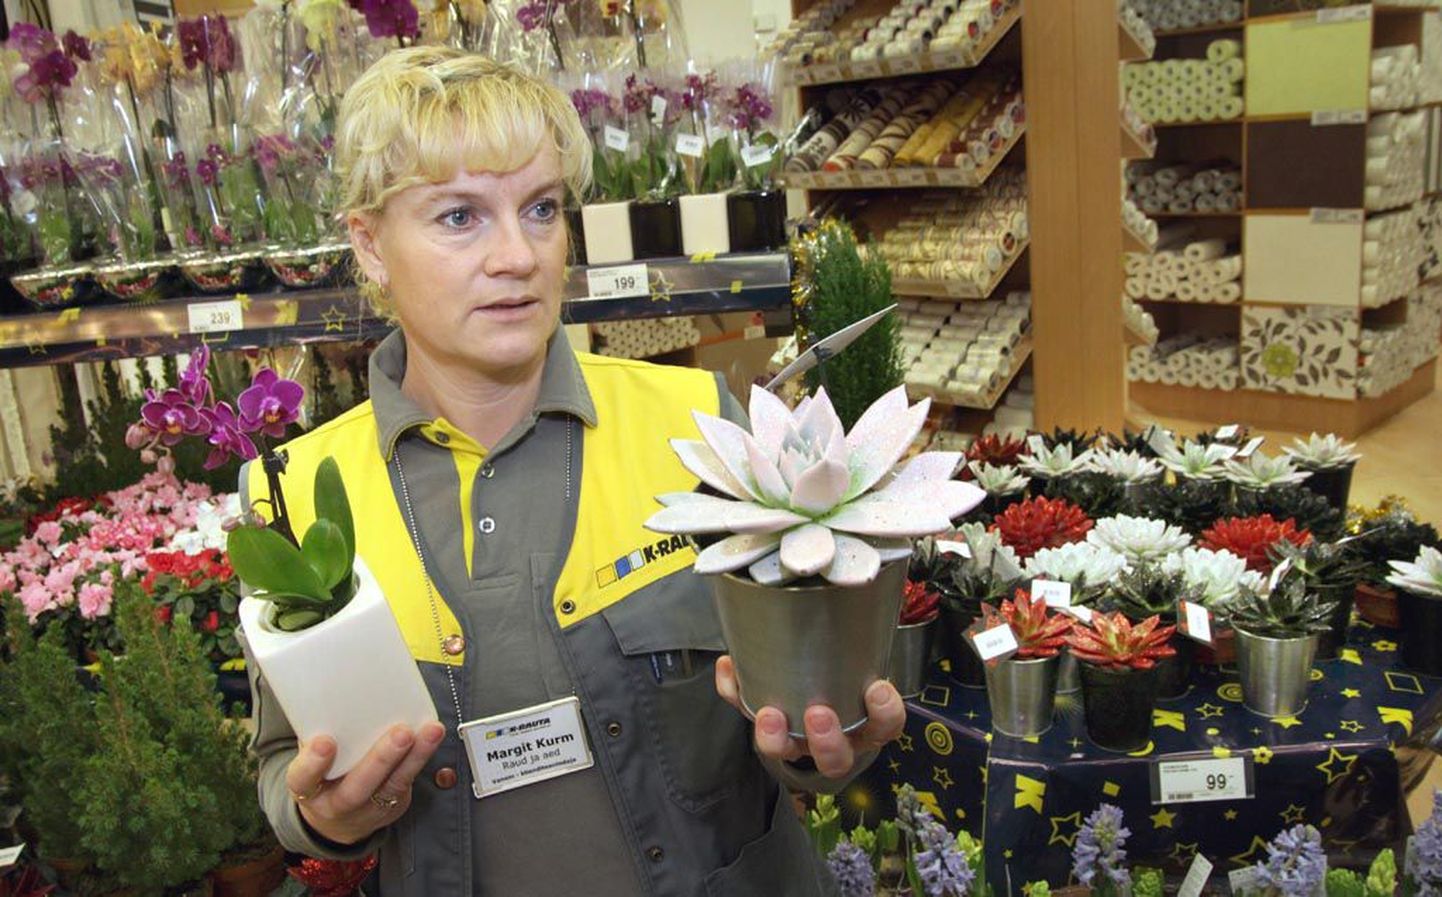 Jõulumeeleolu loomiseks võib koju tuua elavaid taimi, näiteks sädeleva taimelakiga kaetud soomuslehiku, mida K-rauta aiaspetsialist Margit Kurm vasakus käes hoiab.